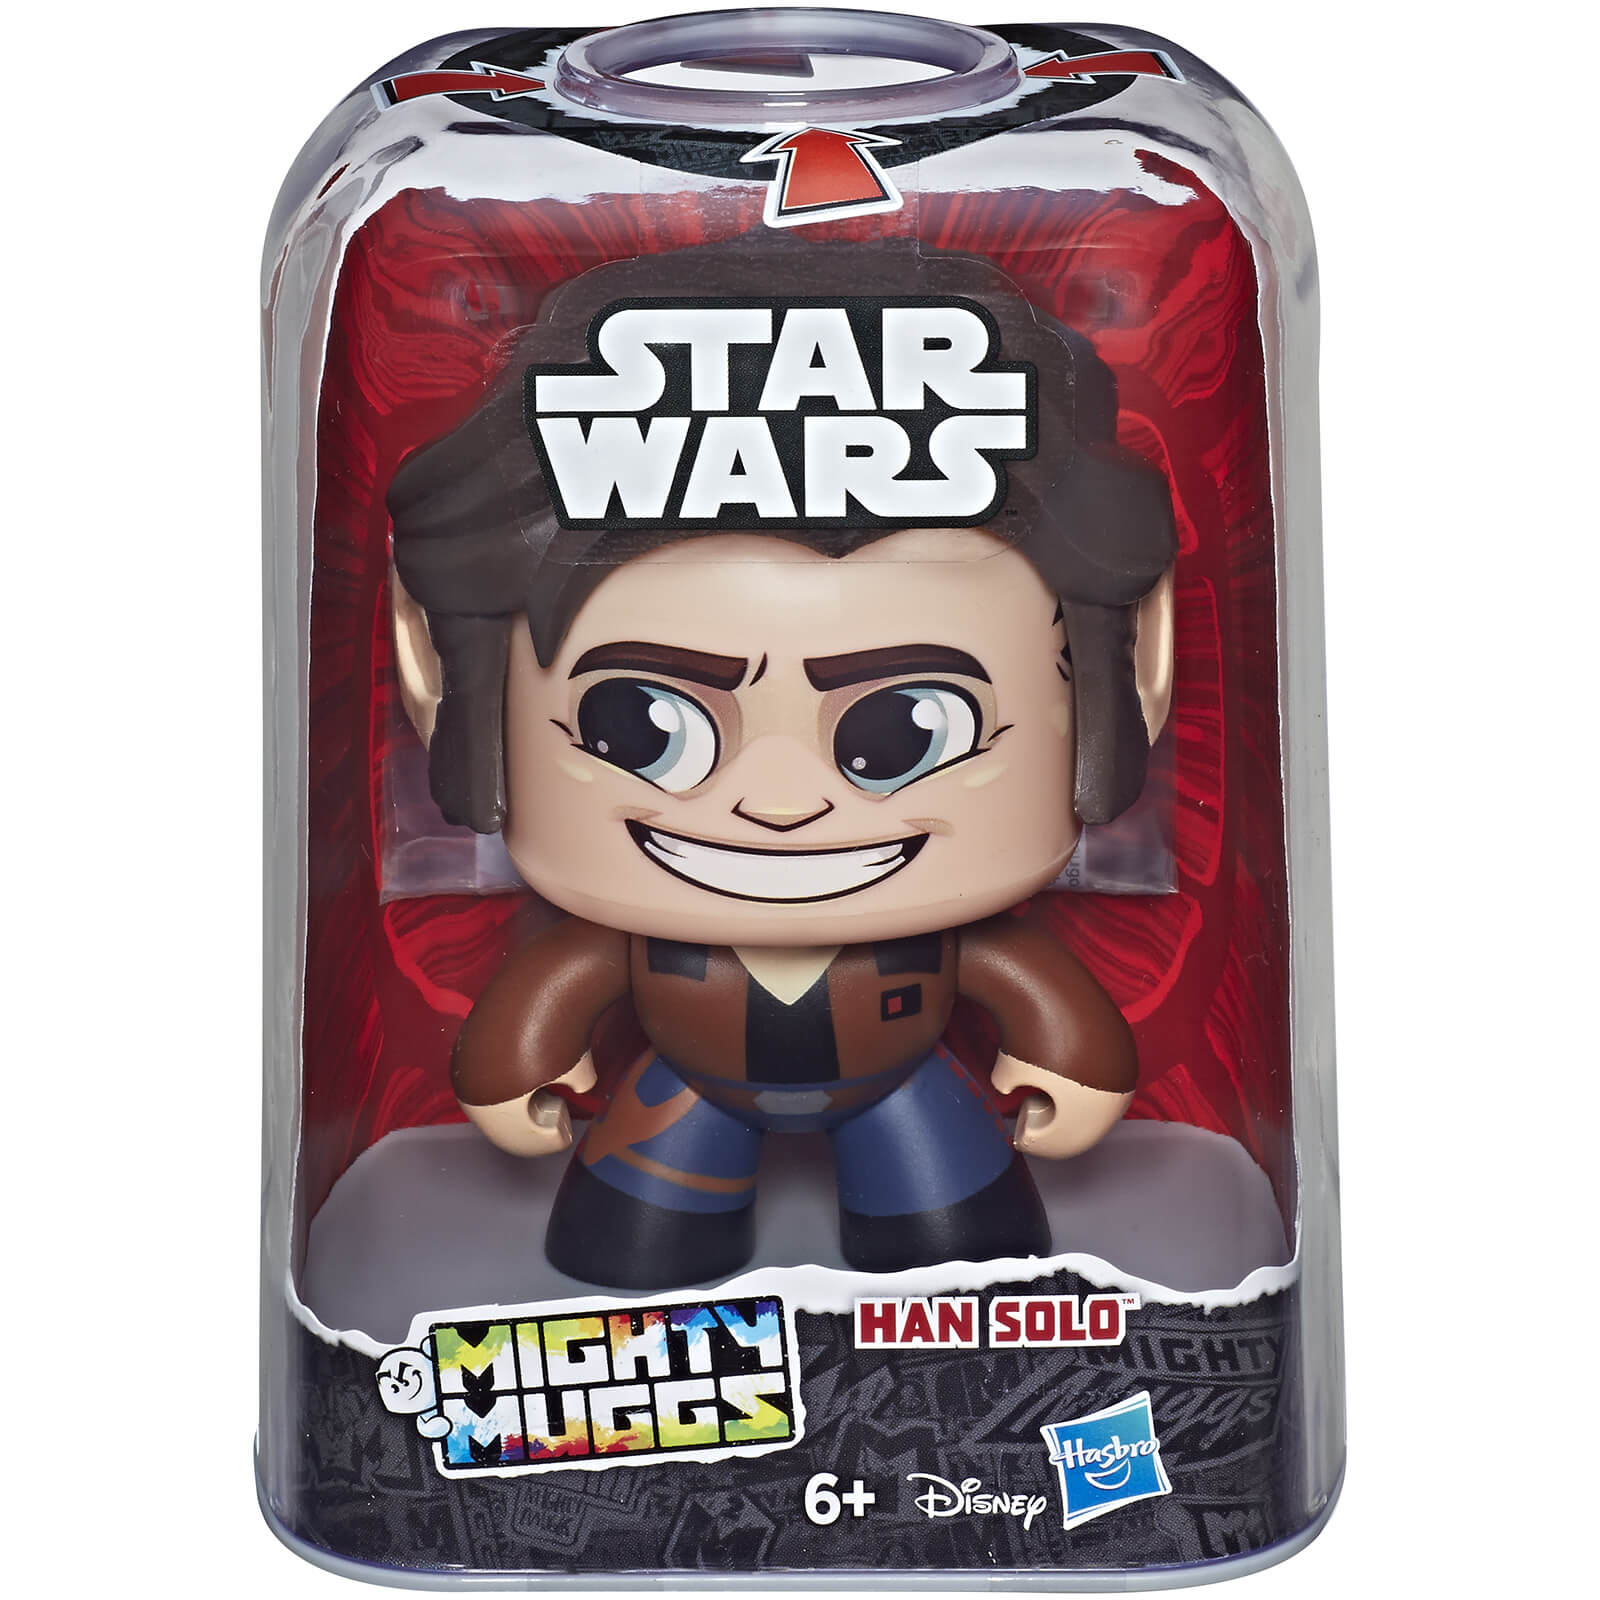 Mighty Muggs Star Wars Mighty Muggs - Han Solo